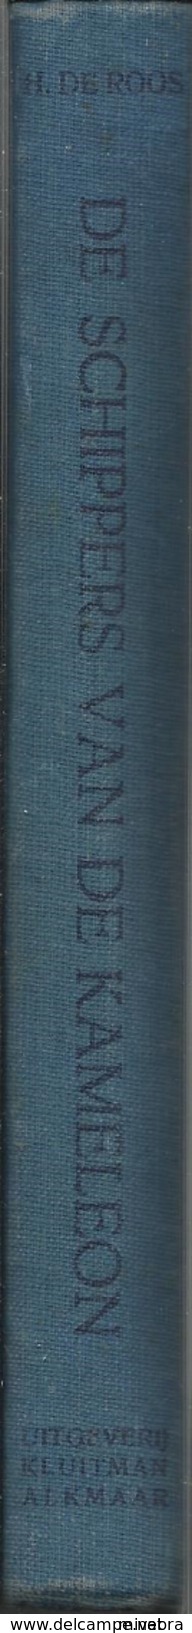 1e Druk 1949 DE SCHIPPERS VAN DE KAMELEON / H. DE ROOS / Uitg. KLUITMAN ALKMAAR Illustraties POL DOM  Collectorsitem - Vecchi